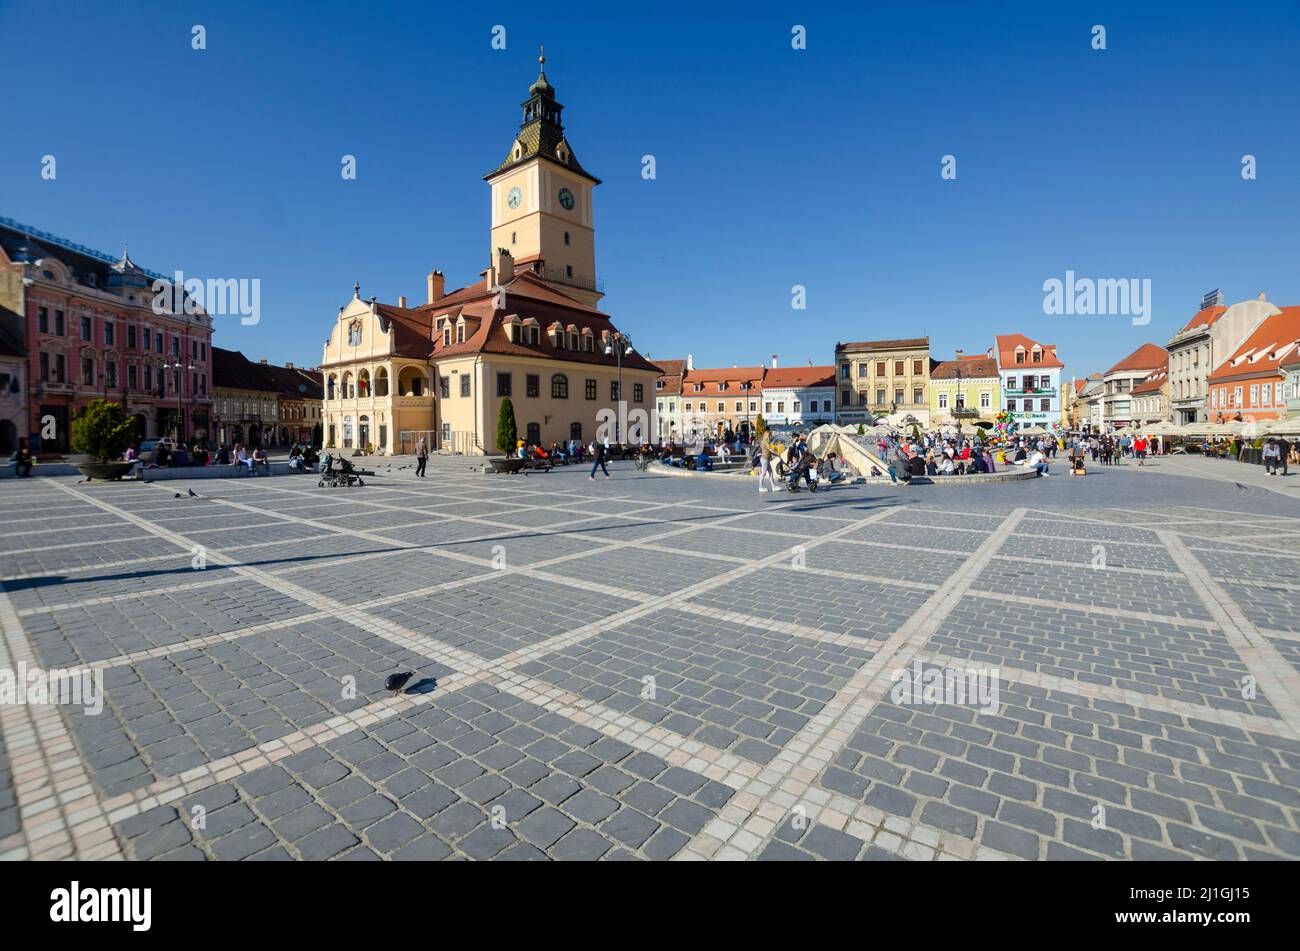 Vista general de la Plaza del Consejo en el Centro Histórico de Brasov, Rumania. La Casa del Consejo domina el centro de la imagen - Foto: Geopix Foto de stock